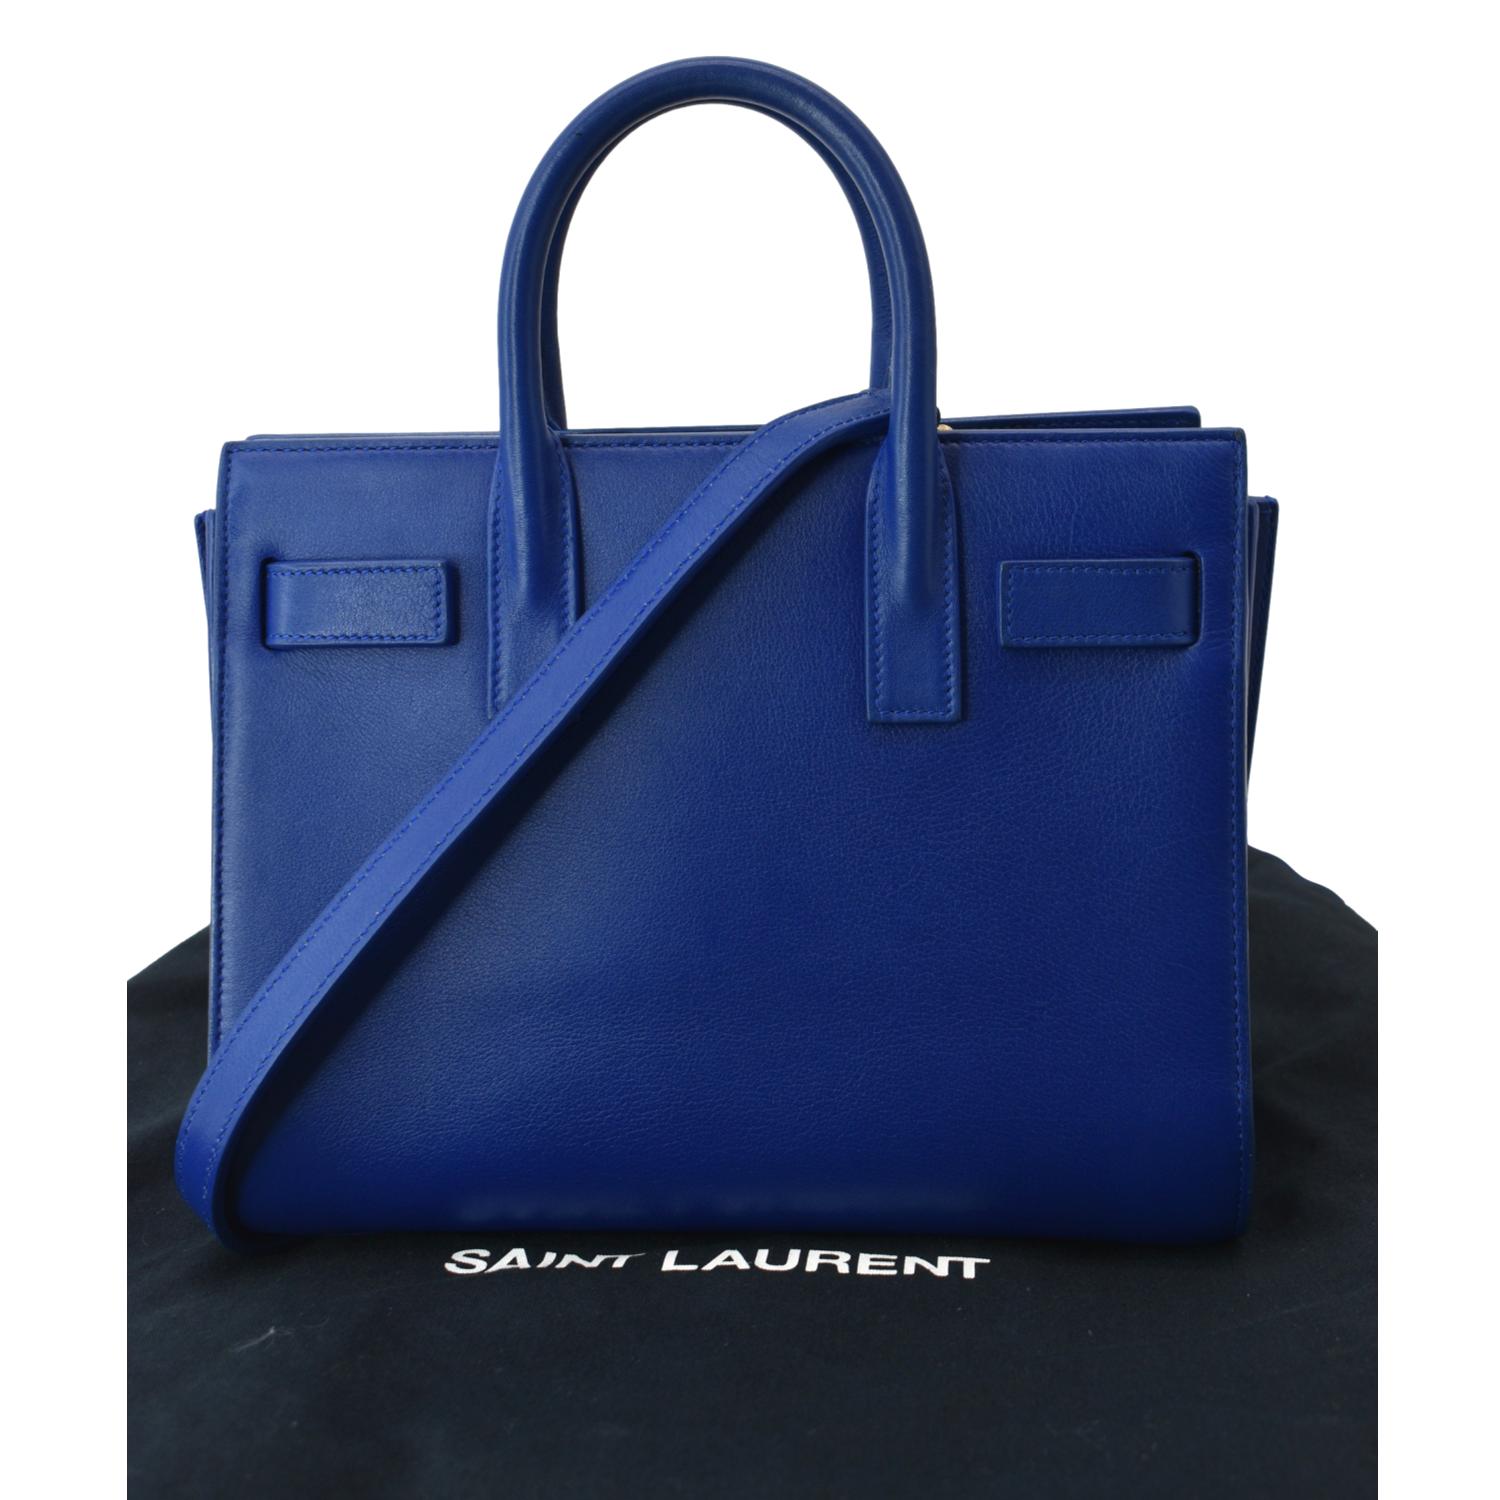 Saint Laurent Nano Sac de Jour Leather Top Handle Bag